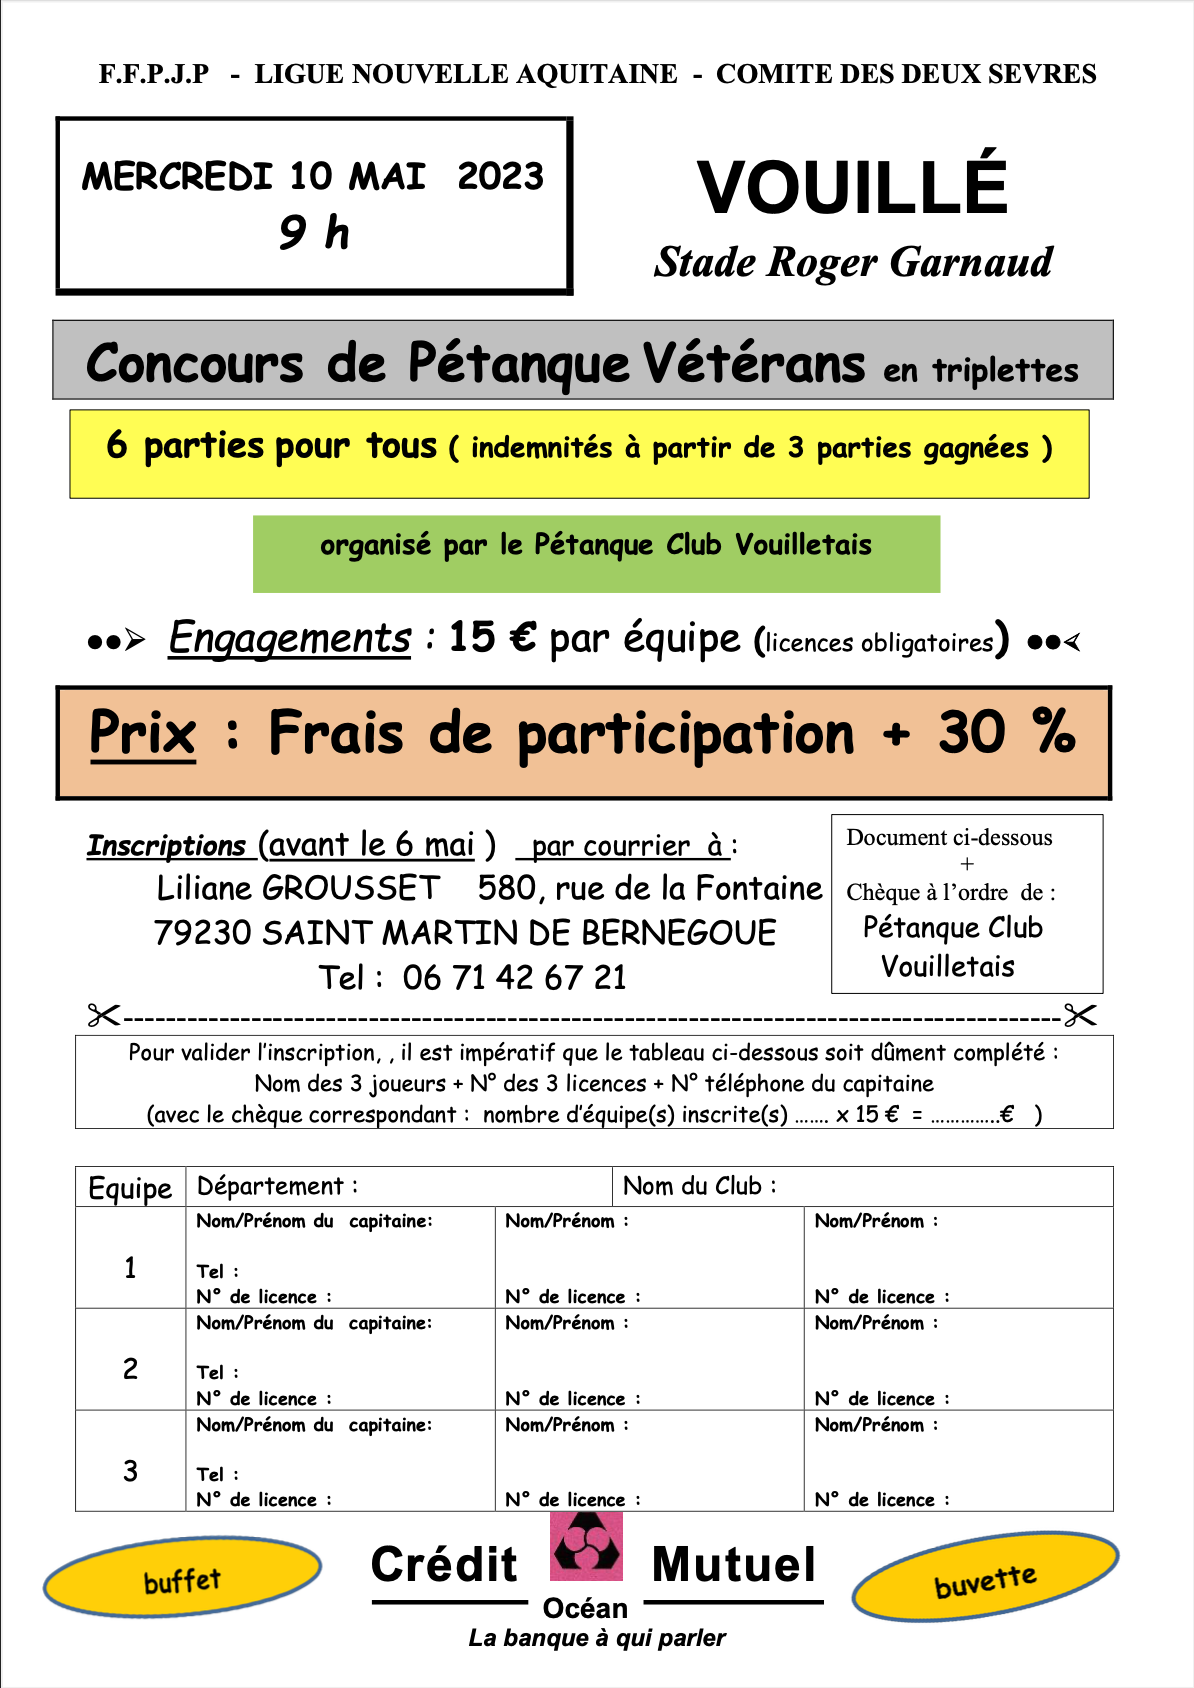 Concours vétérans 10 mai 2023 - Vouillé